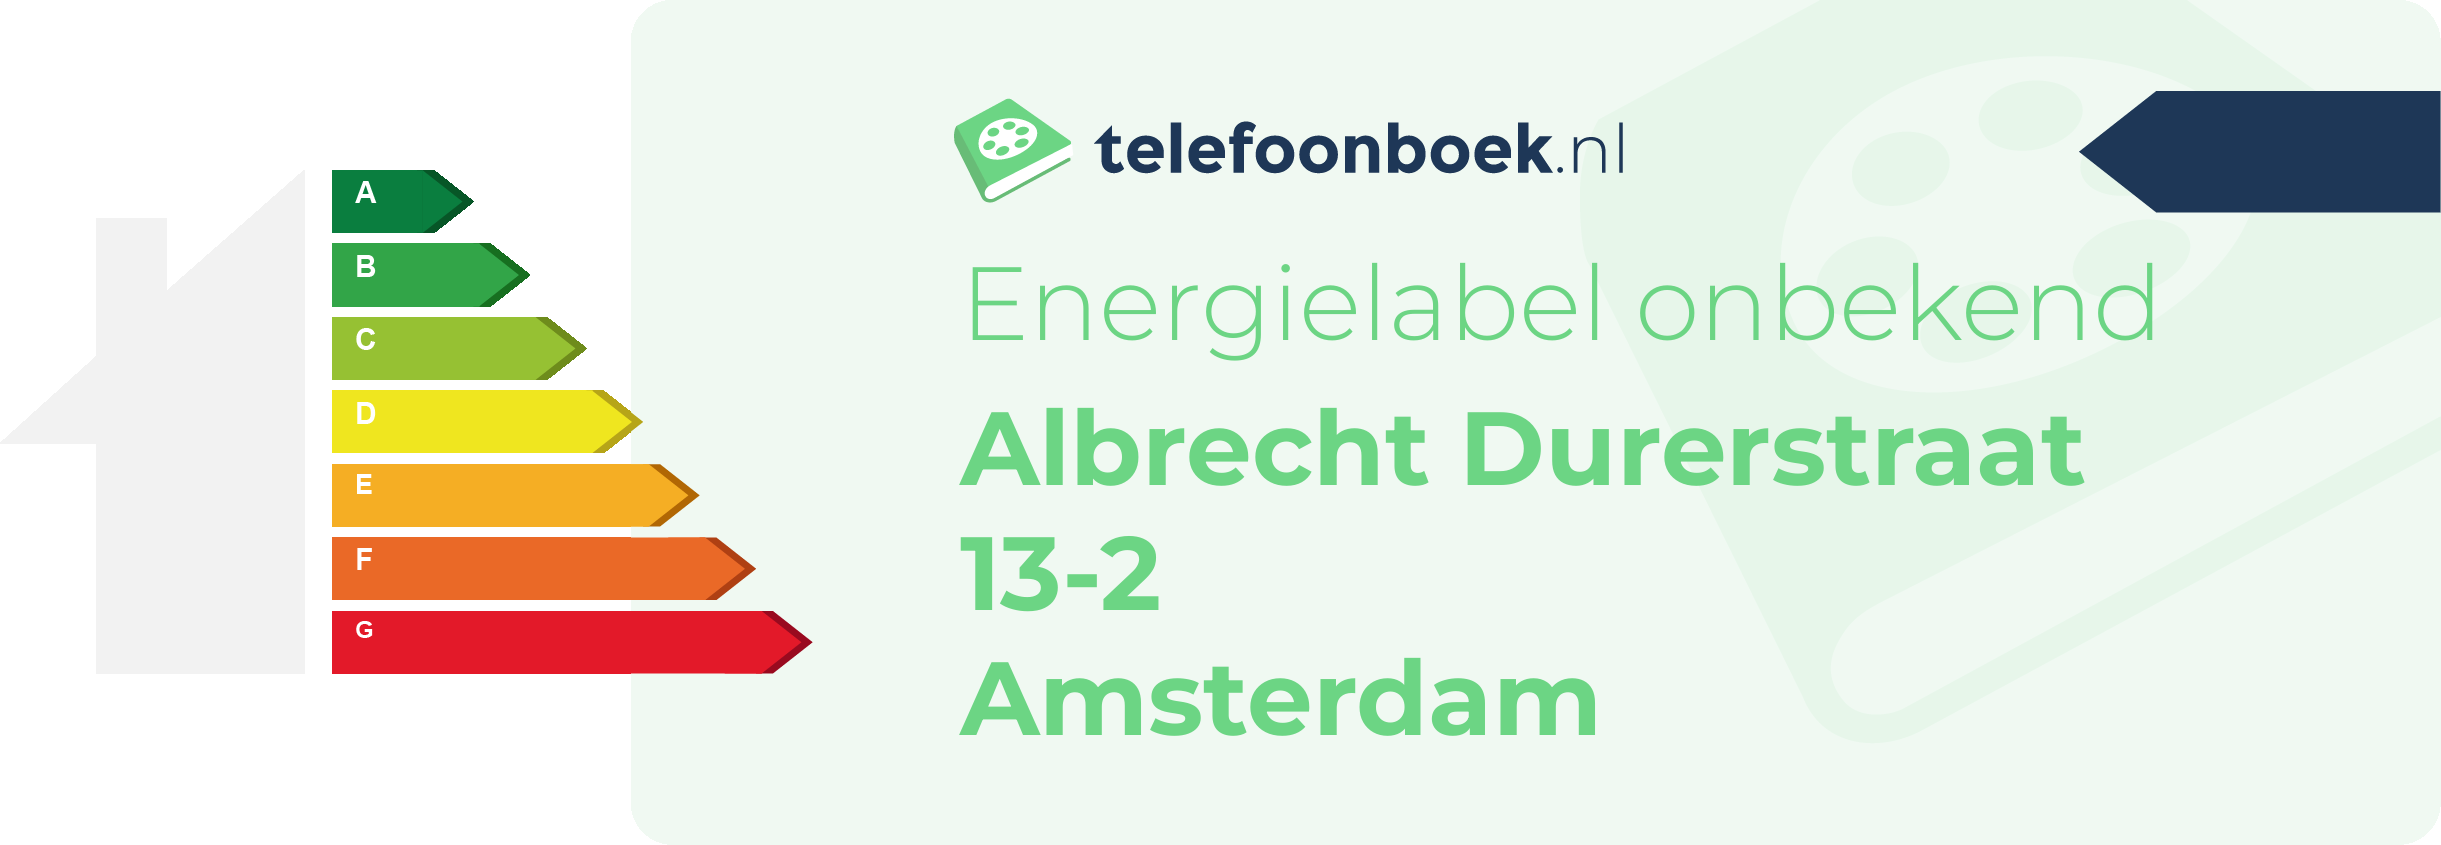 Energielabel Albrecht Durerstraat 13-2 Amsterdam